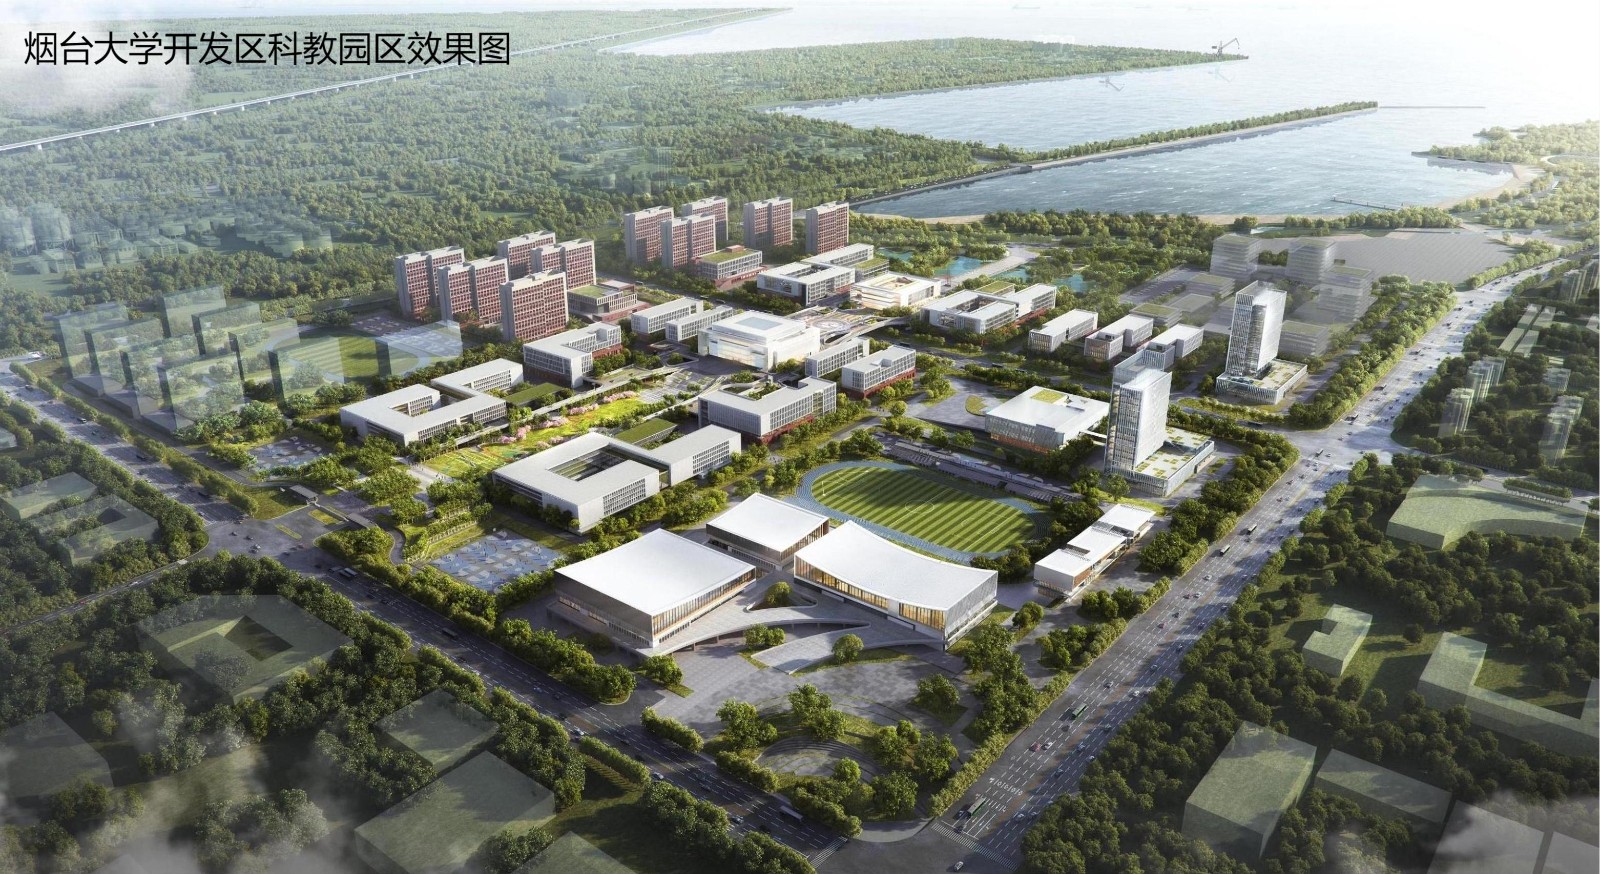 烟台大学开发区科教园区开工建设校城融合发展为高水平大学建设注入